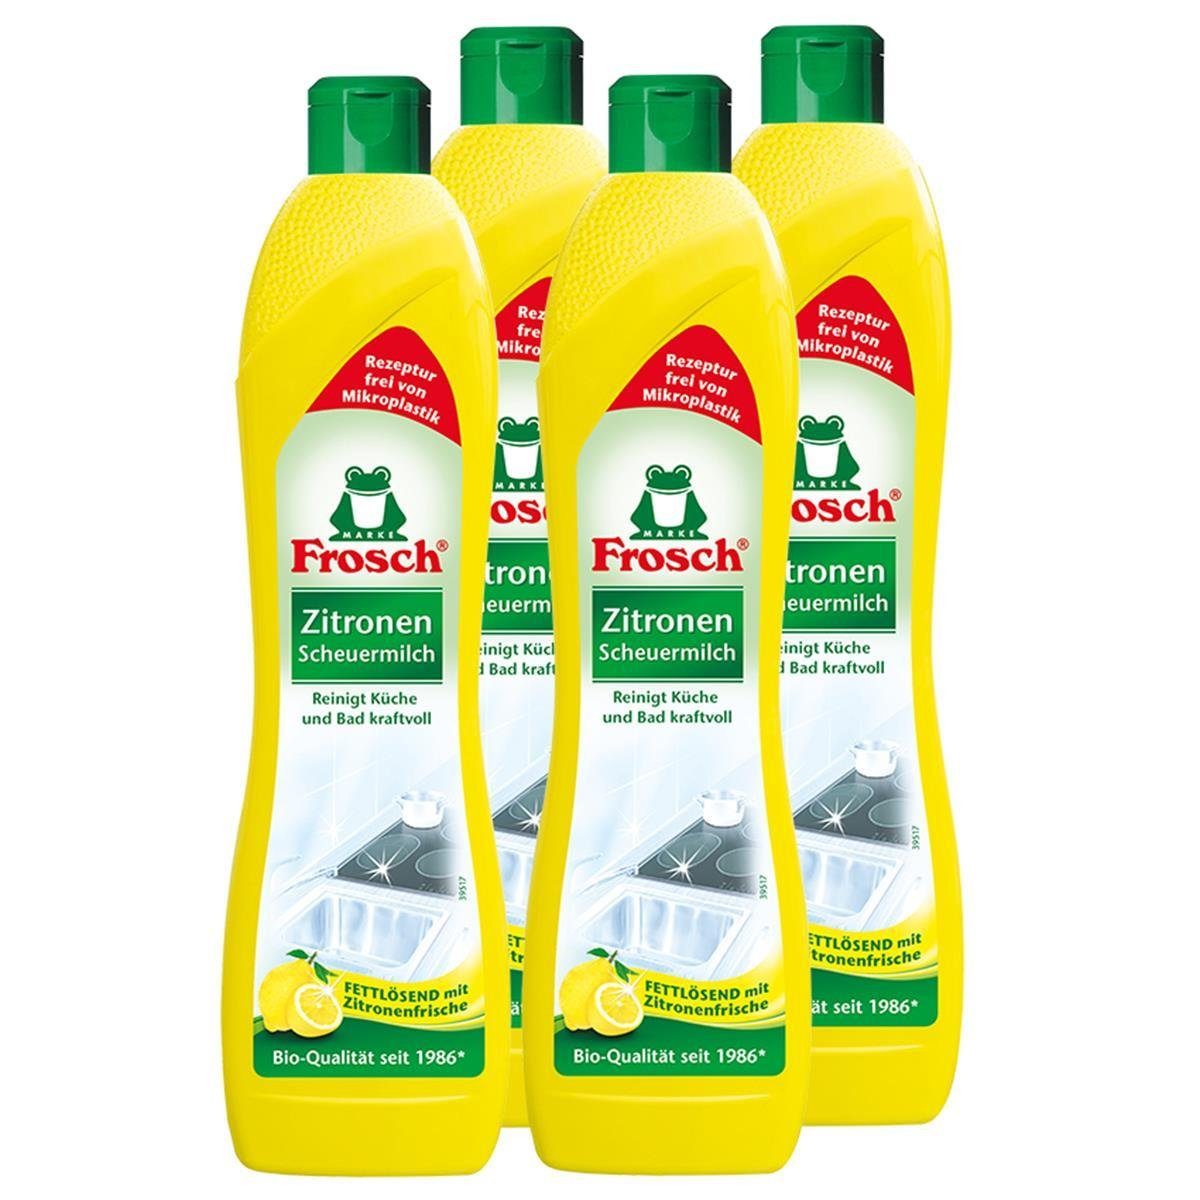 FROSCH 4x Frosch Zitronen Scheuermilch 500 ml - Reinigt Bad und Küche kraftvo Spezialwaschmittel